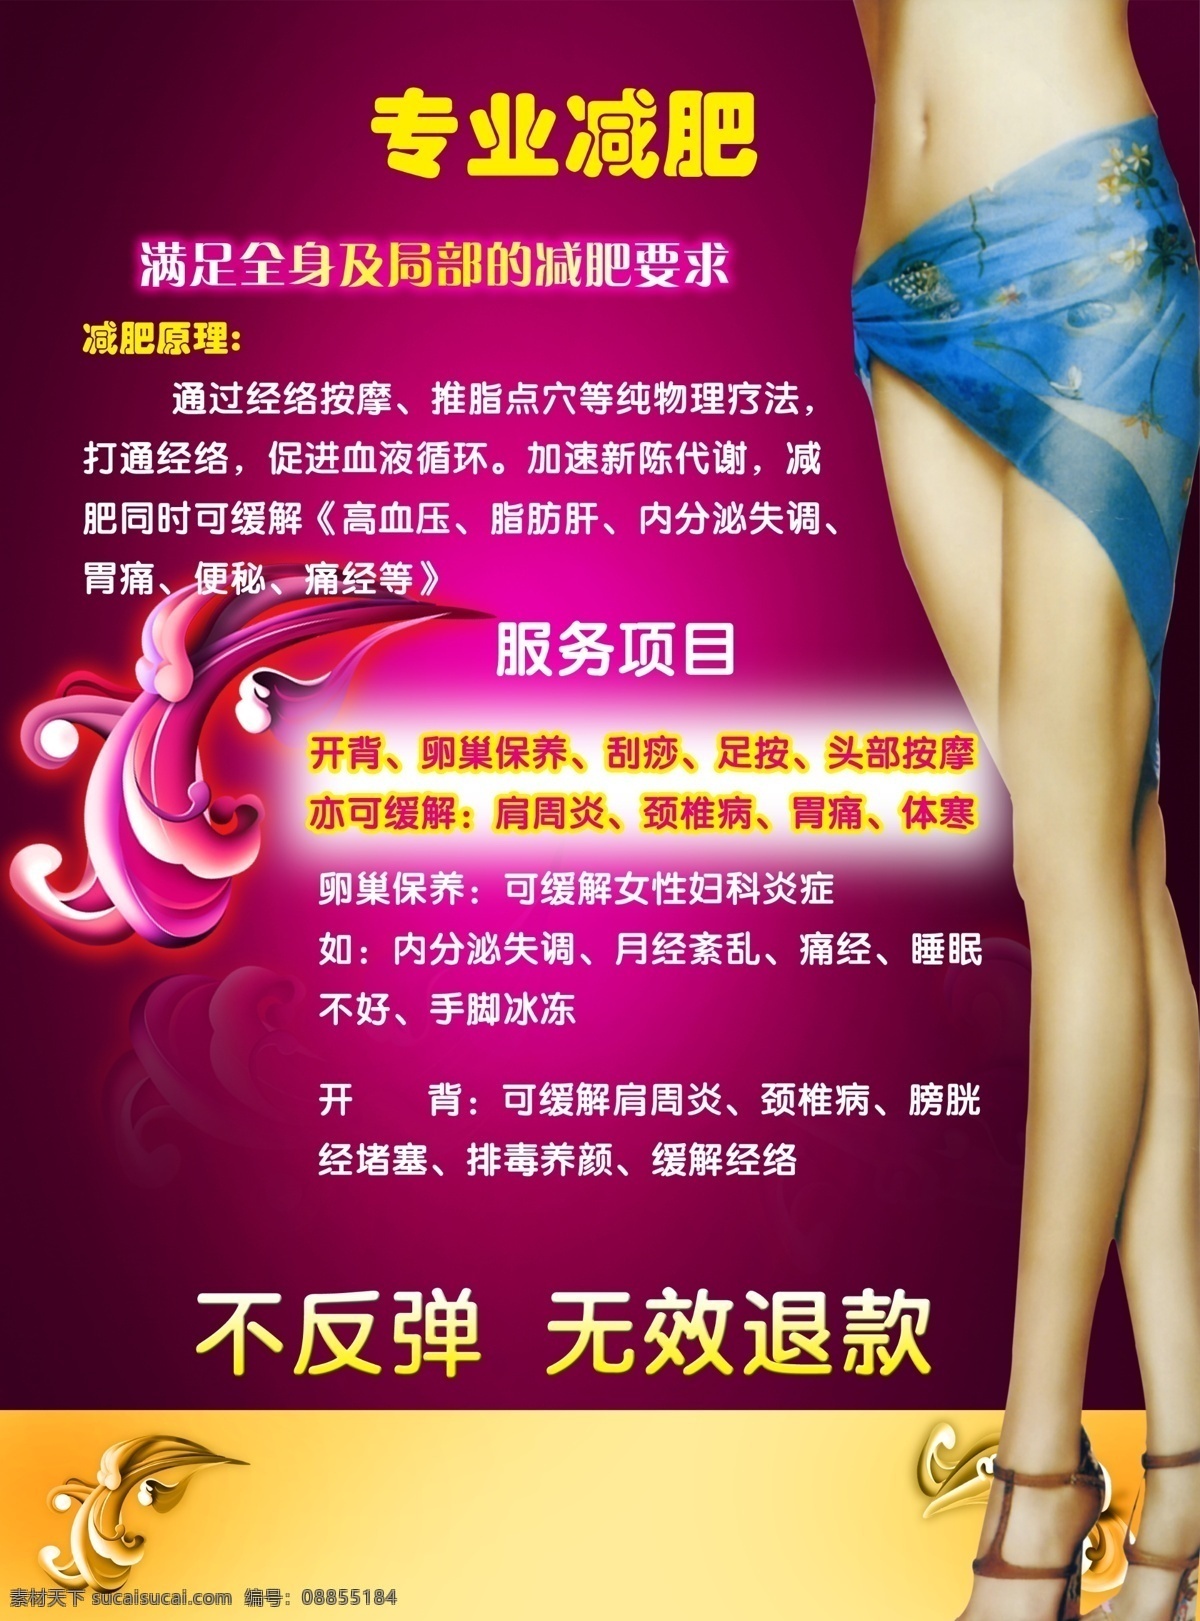 减肥 美容服务 宣传海报 宣传广告 健身 美容 女性 女人 减肥瘦身 美容院 肚皮 玉腿 广告设计模板 源文件